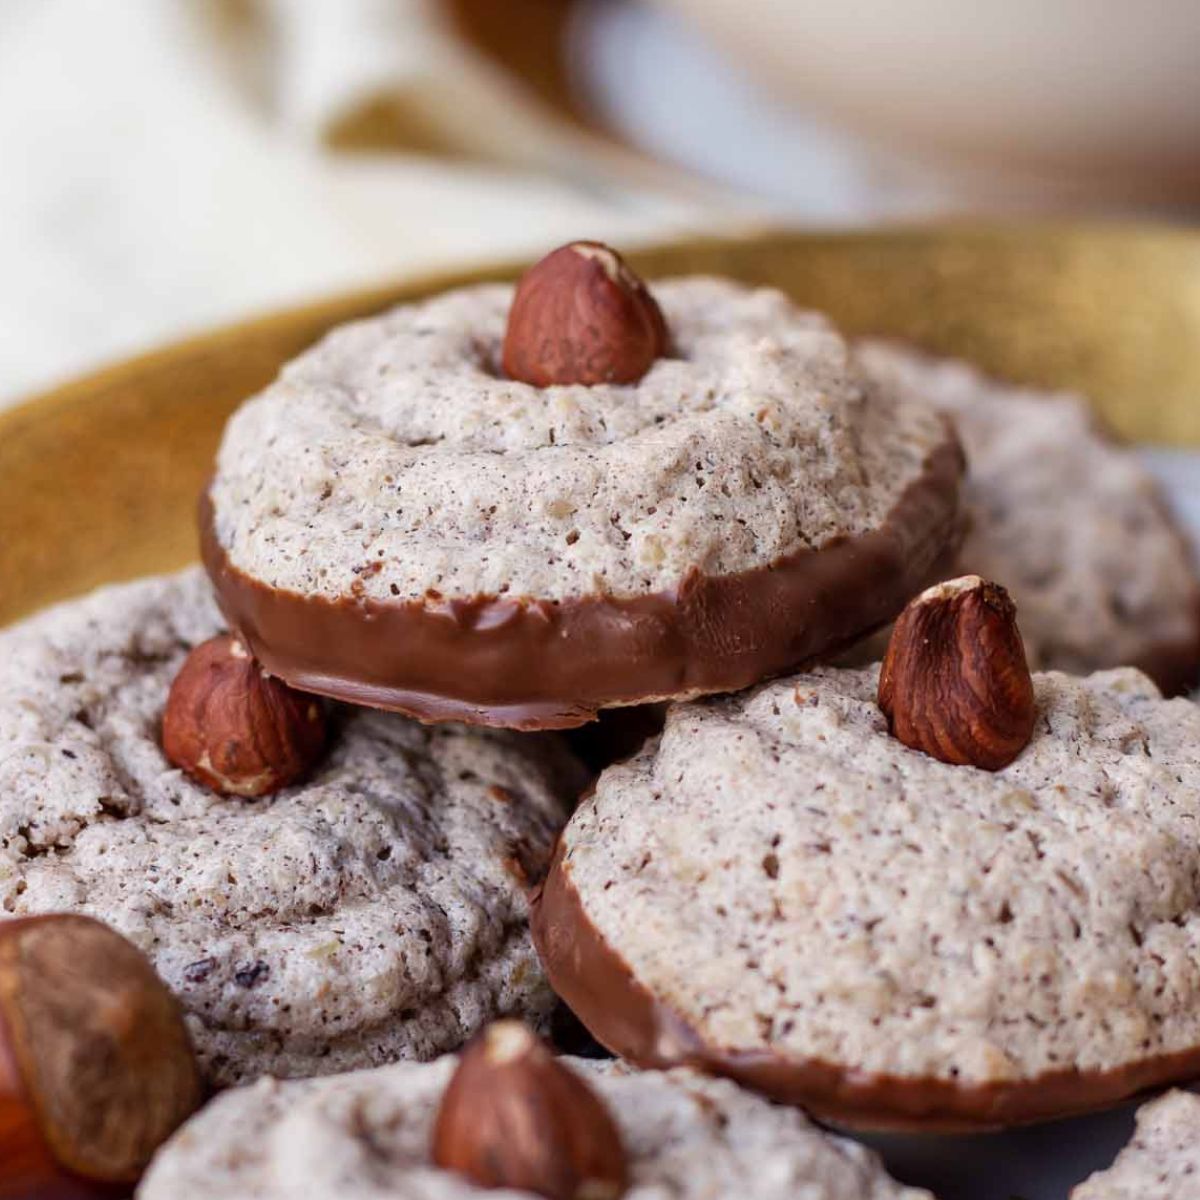 German Meringue Cookies – Nussmakronen